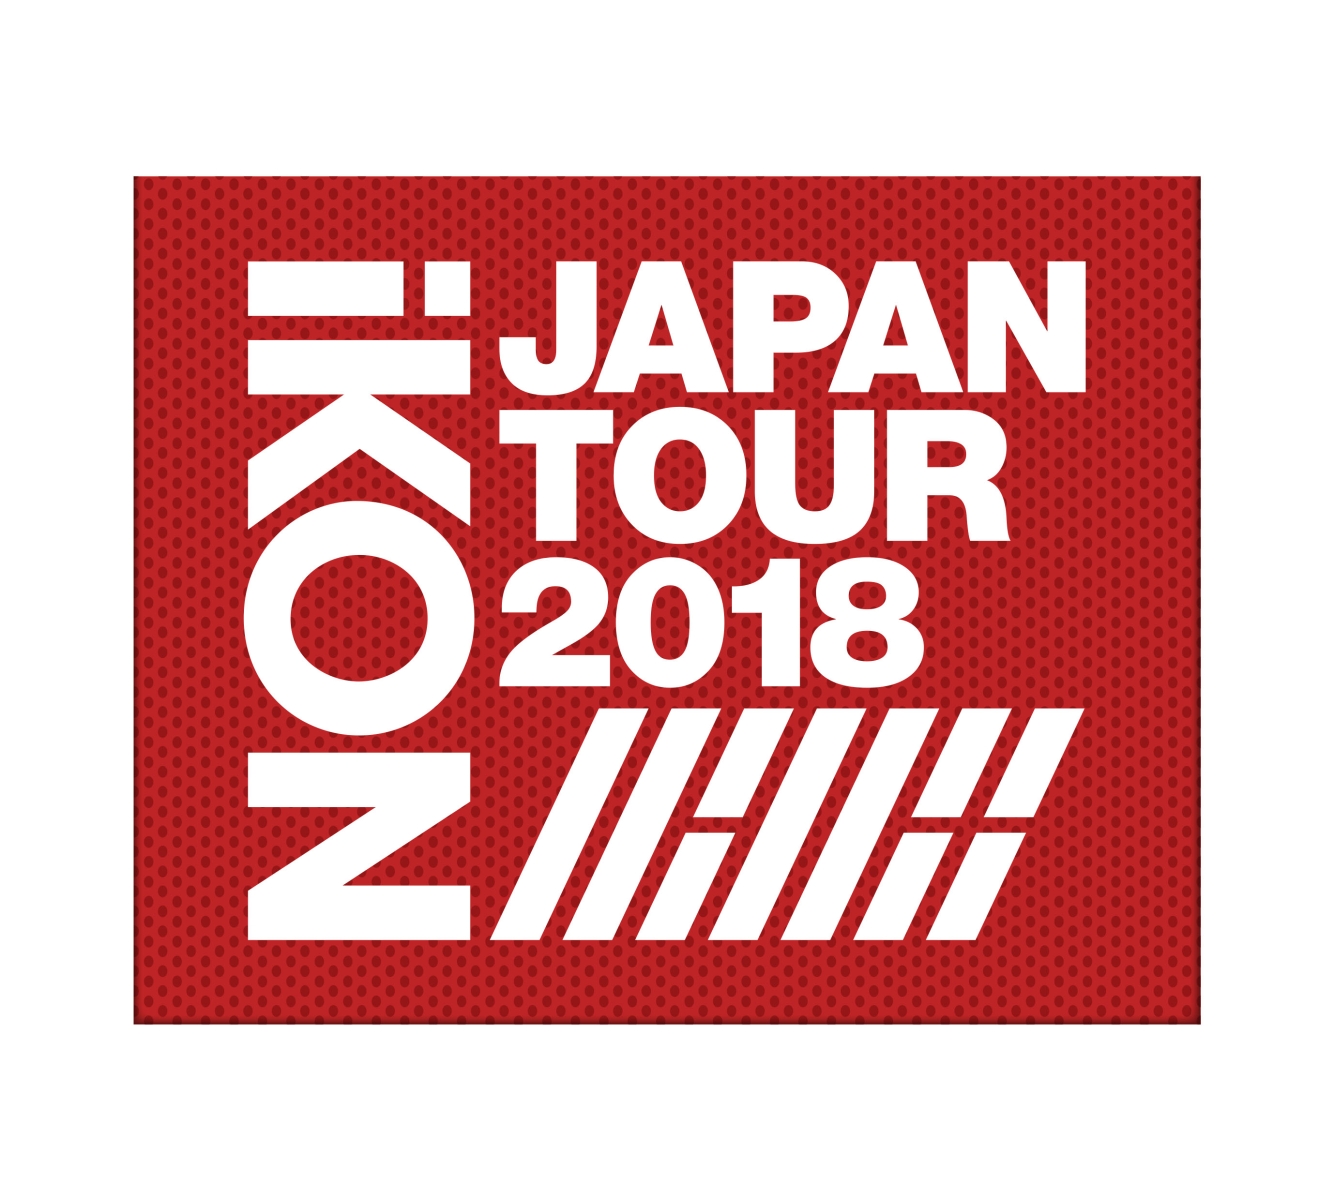 iKONJAPANTOUR2018(2Blu-ray+2CDスマプラムービー&ミュージック対応)(初回生産限定盤)【Blu-ray】[iKON]